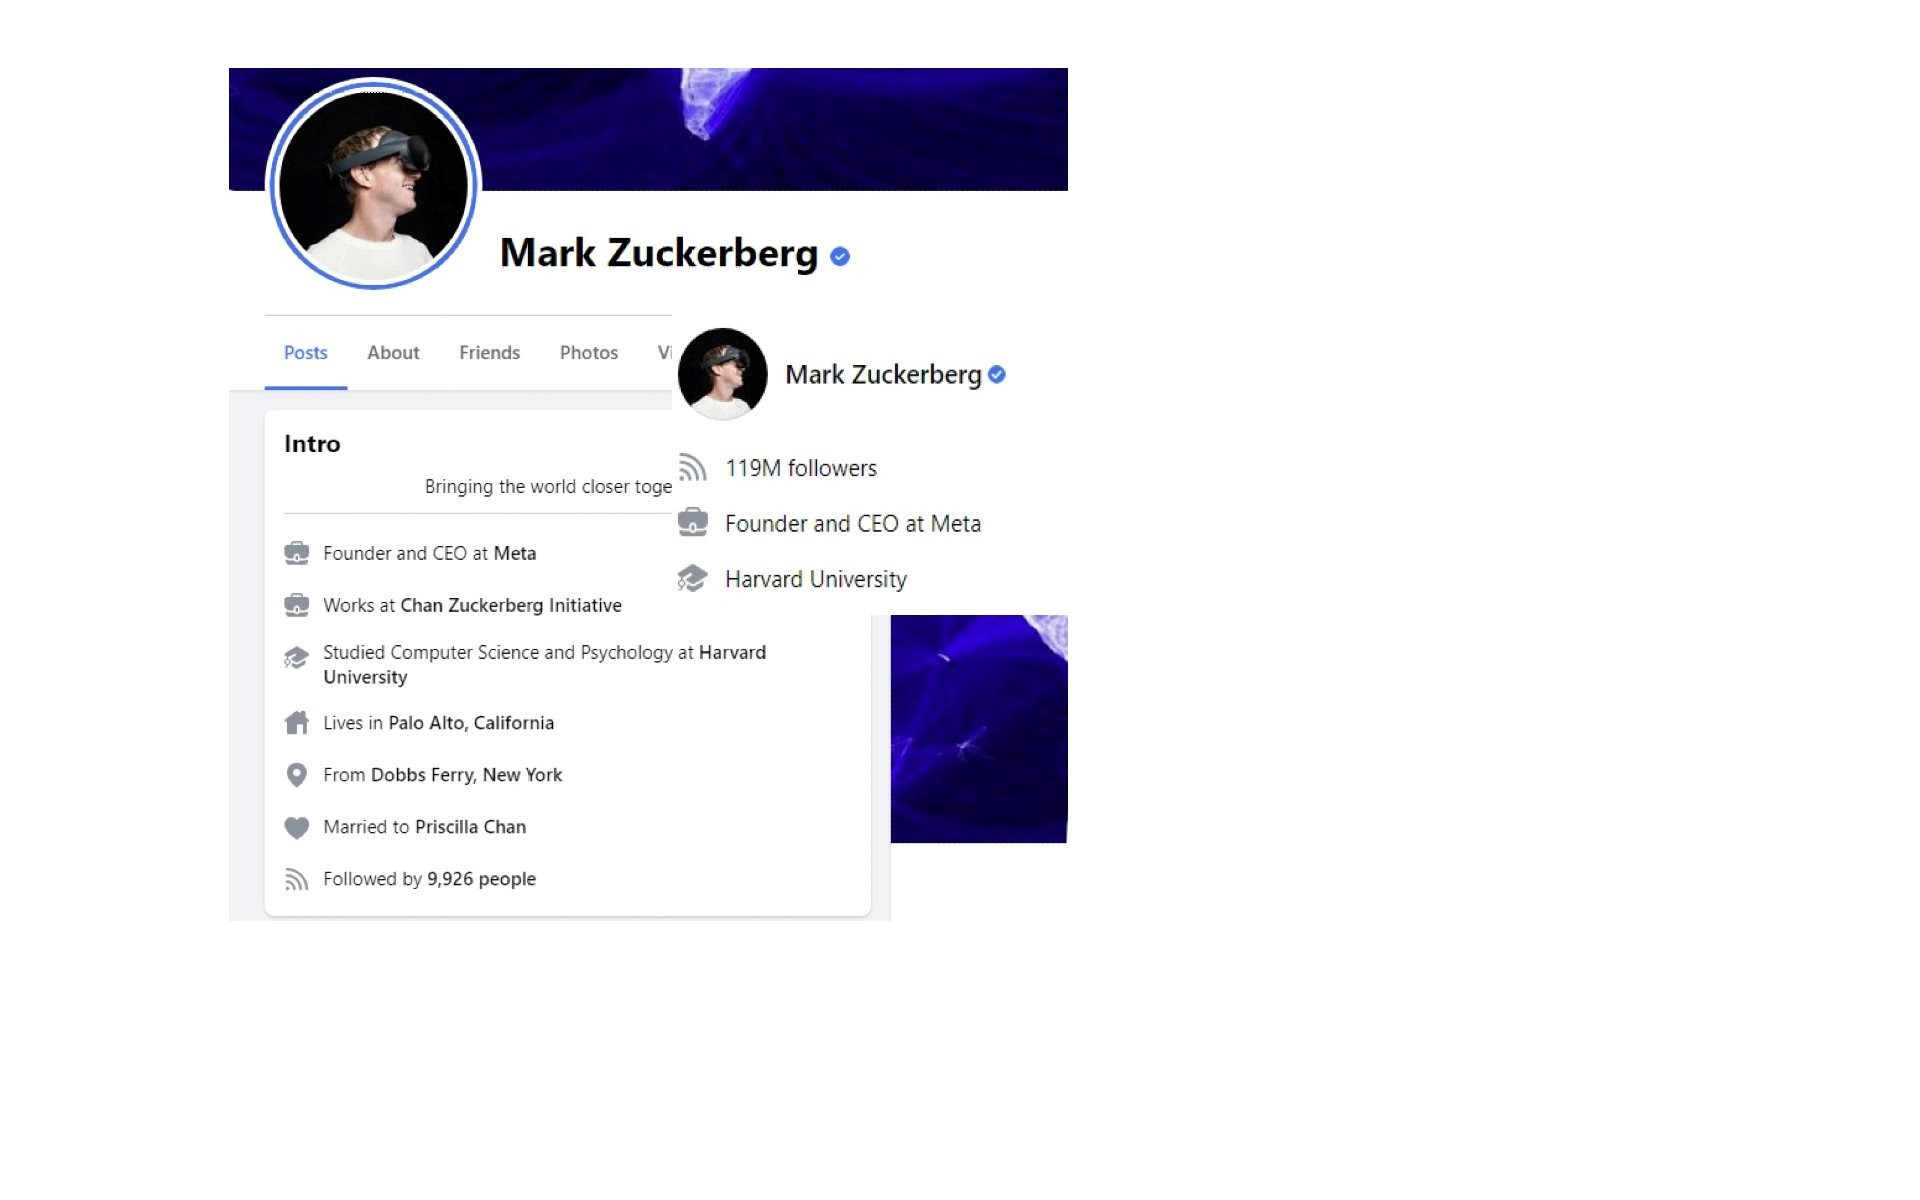 Tài khoản Facebook 120 triệu người theo dõi của CEO Mark Zuckerberg tụt xuống chỉ còn hơn 9.000 - Ảnh 1.